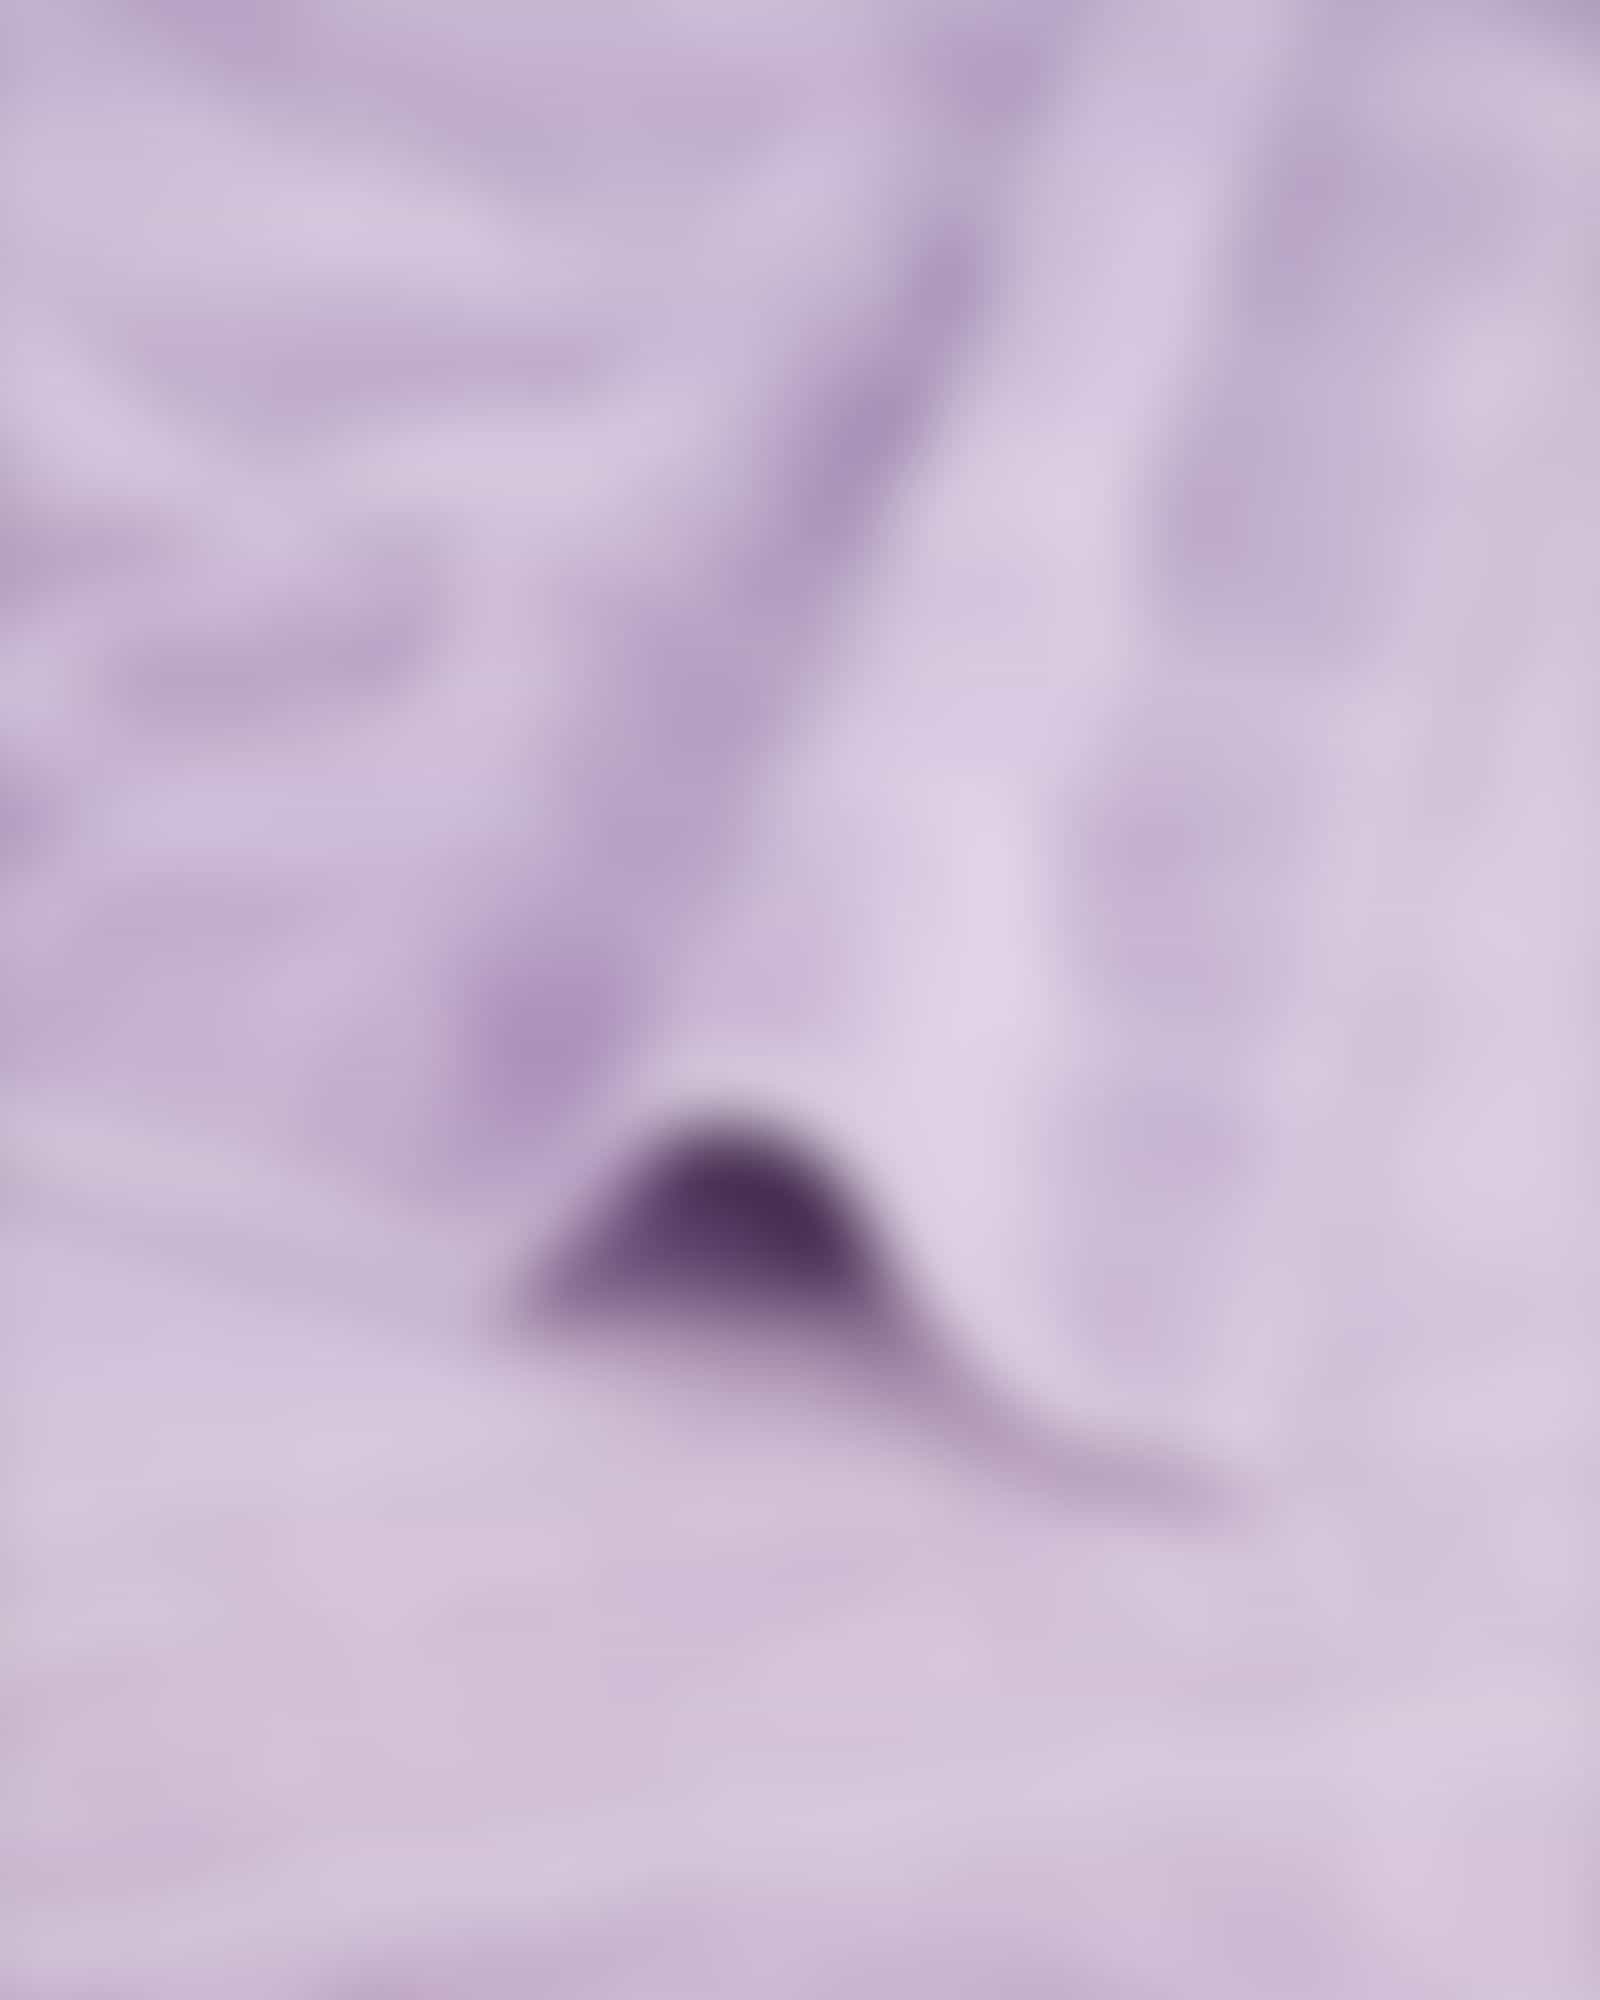 Cawö - Noblesse Uni 1001 - Farbe: lavendel - 806 - Handtuch 50x100 cm